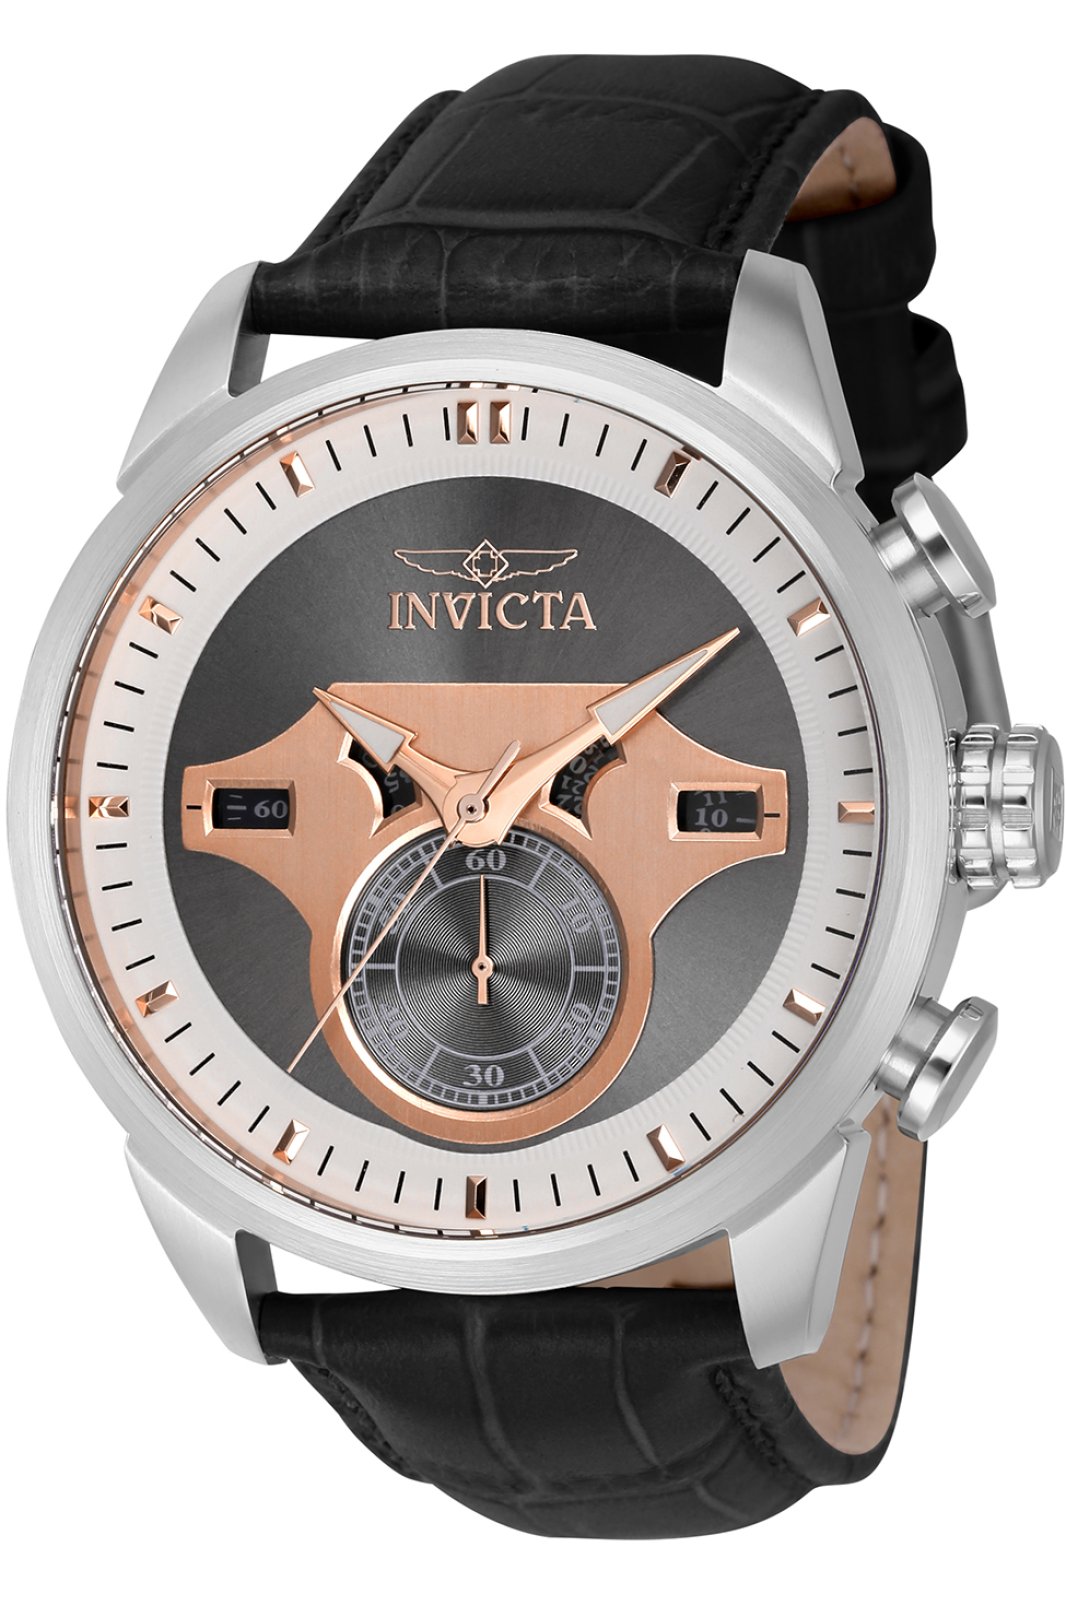 Invicta Objet D Art 43612 Men's Quartz Watch - 46mm